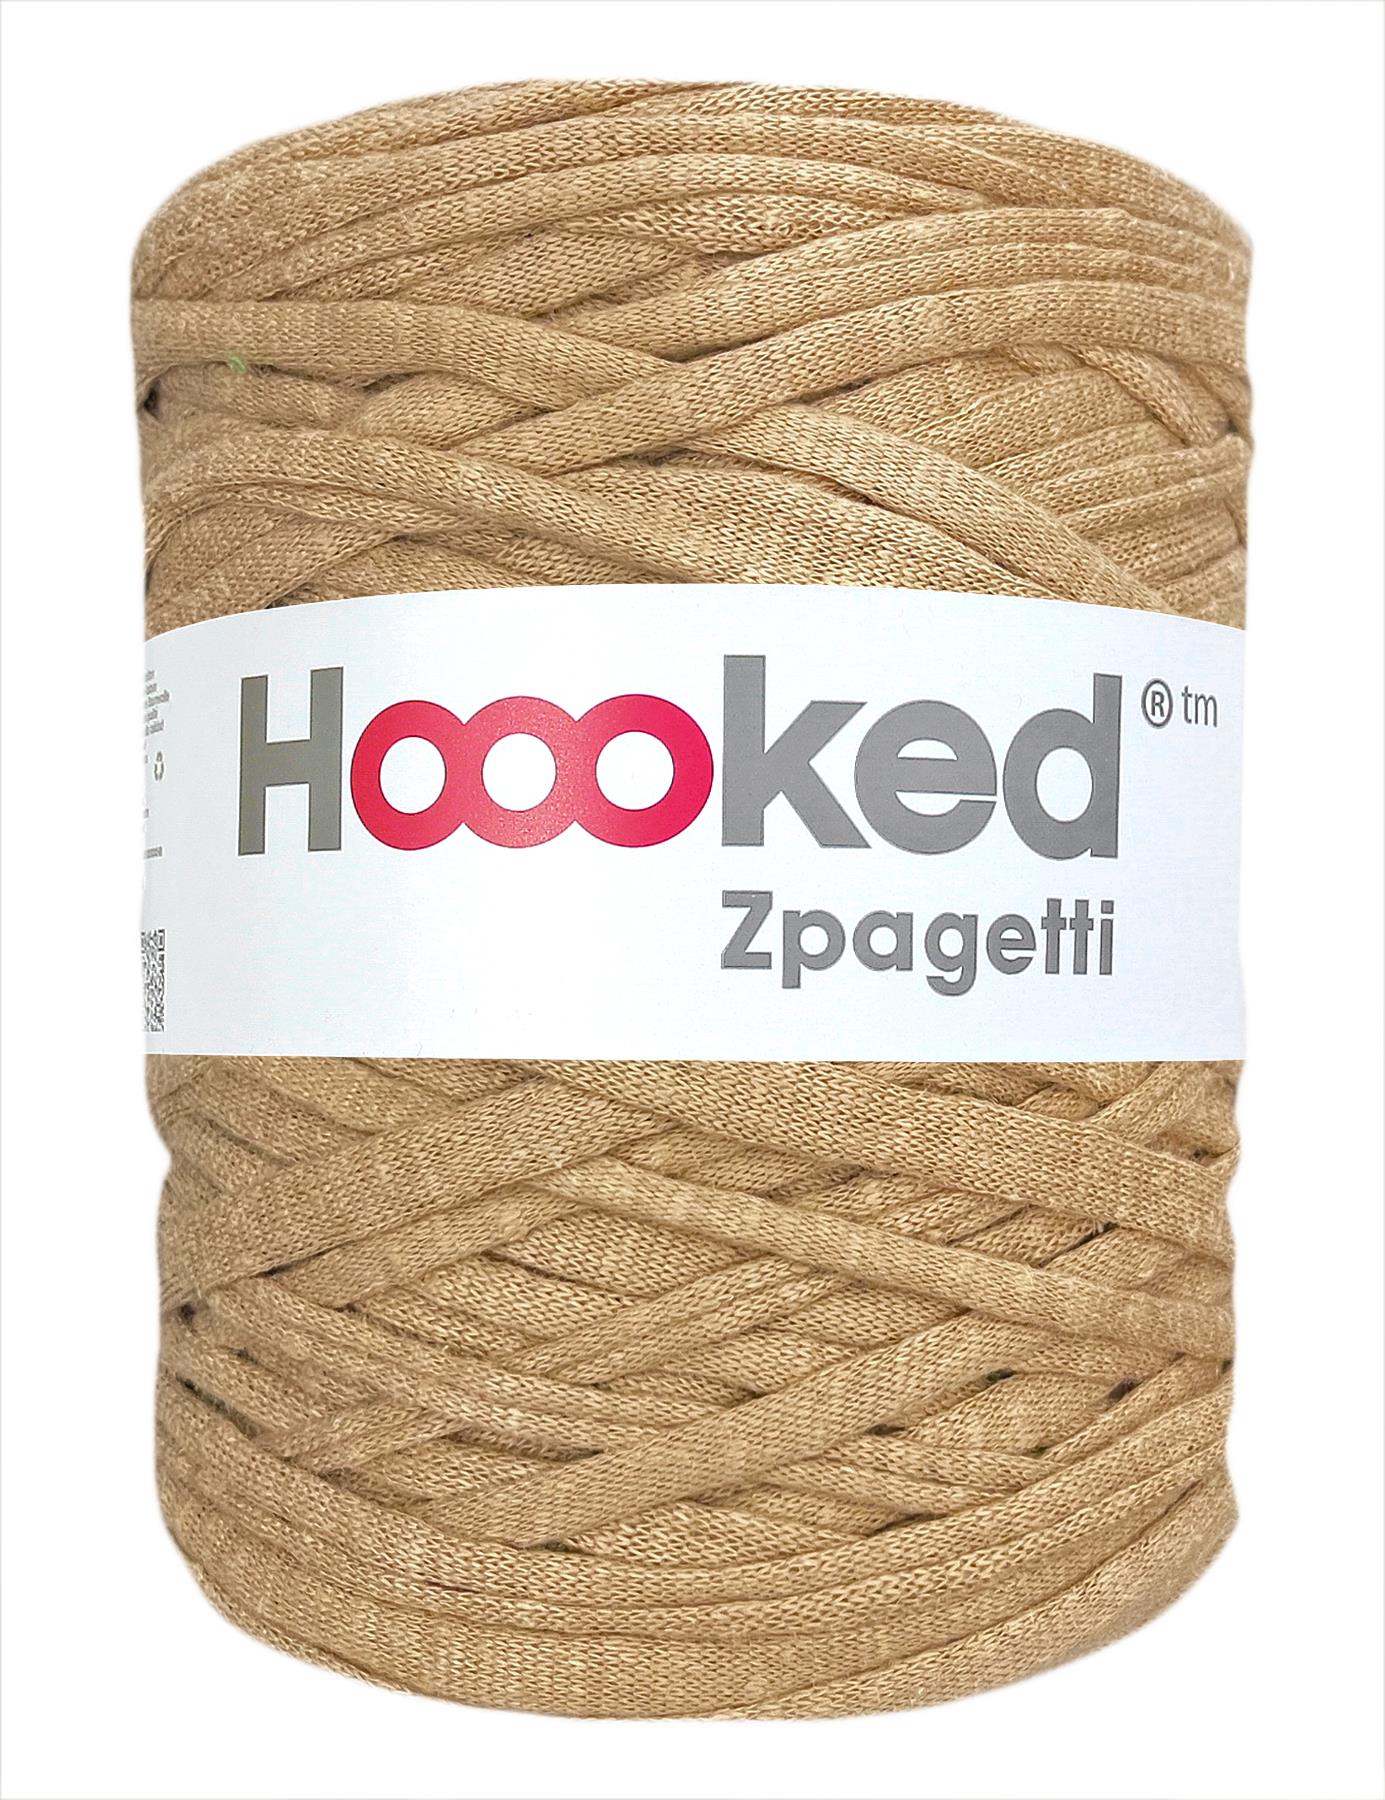 Buff beige t-shirt yarn by Hoooked Zpagetti (100-120m)